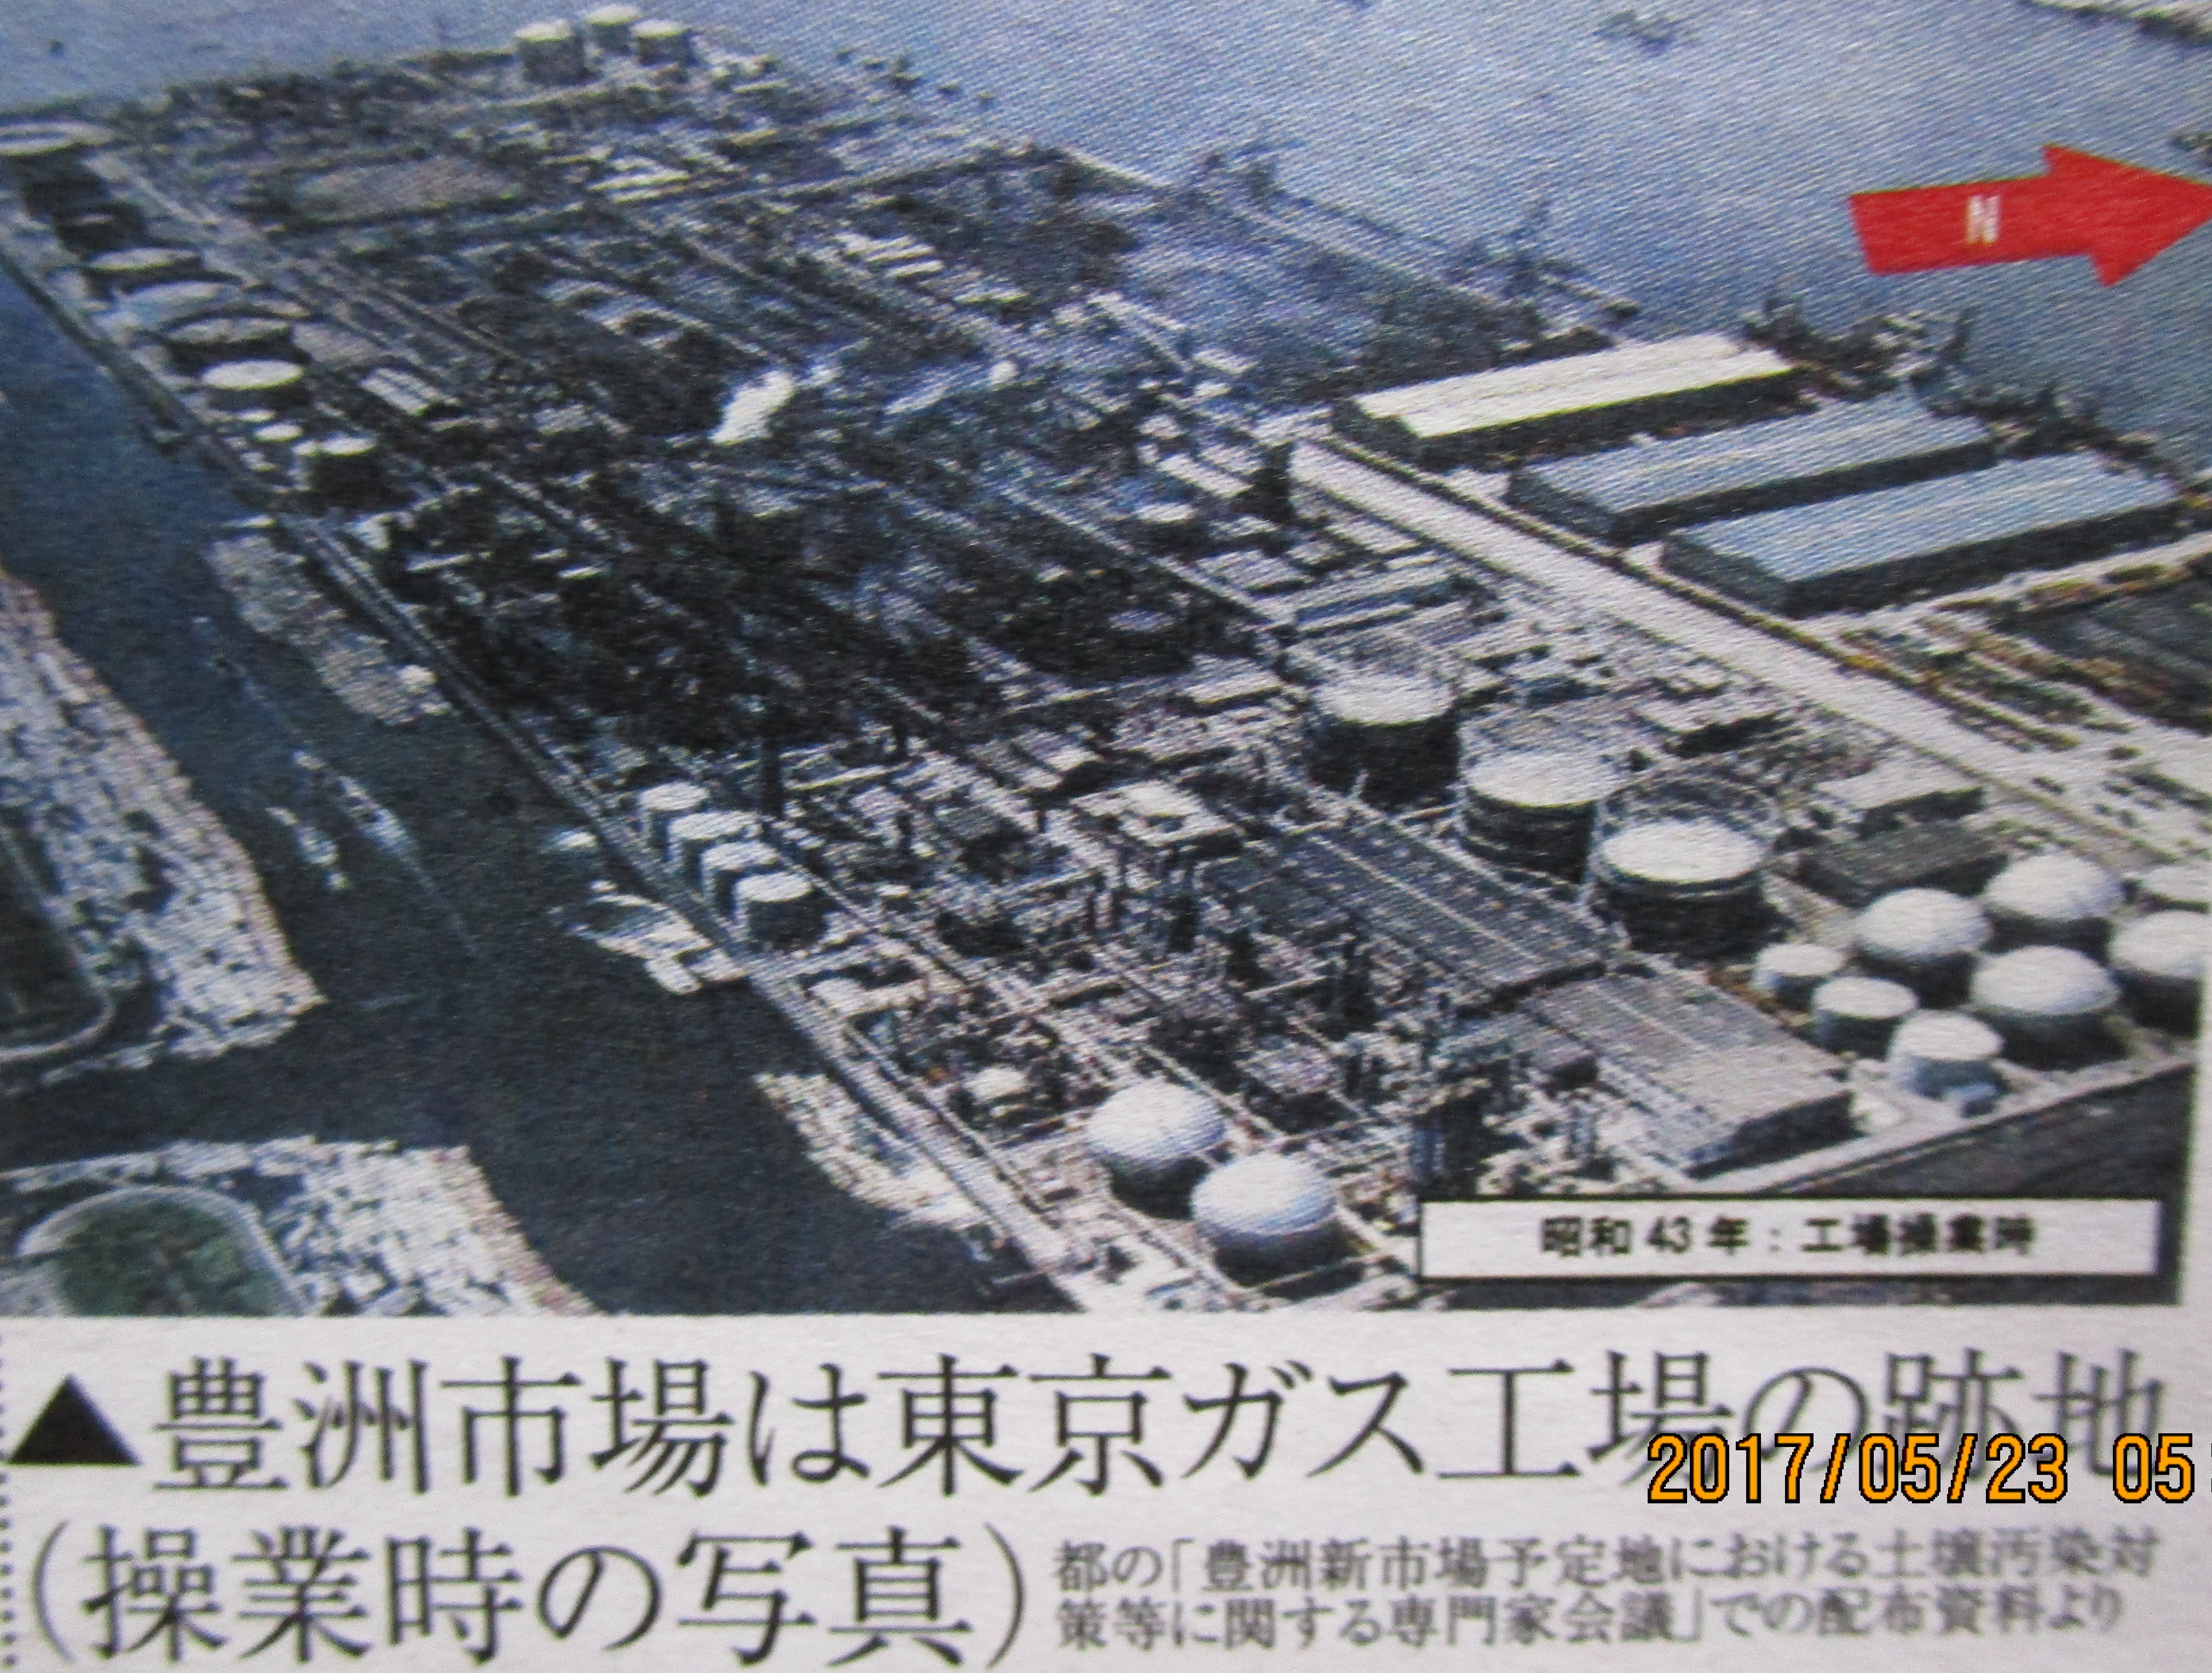 豊洲市場は東京ガス工場の跡地の写真」に衝撃・東京都議選応援 | えみ